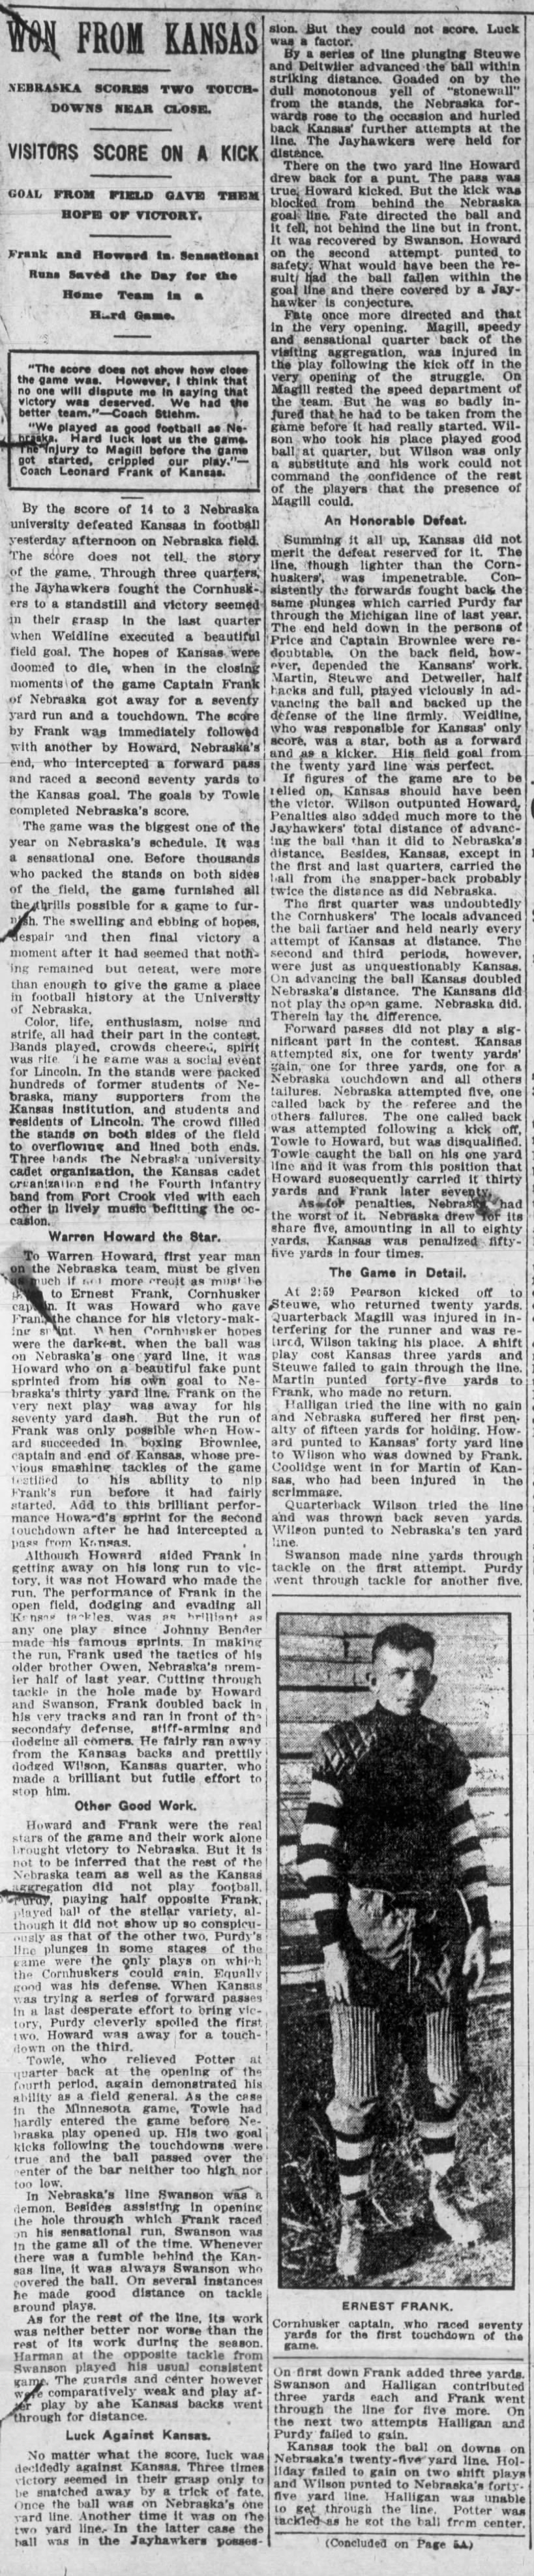 1912 Nebraska-Kansas part 1 Journal